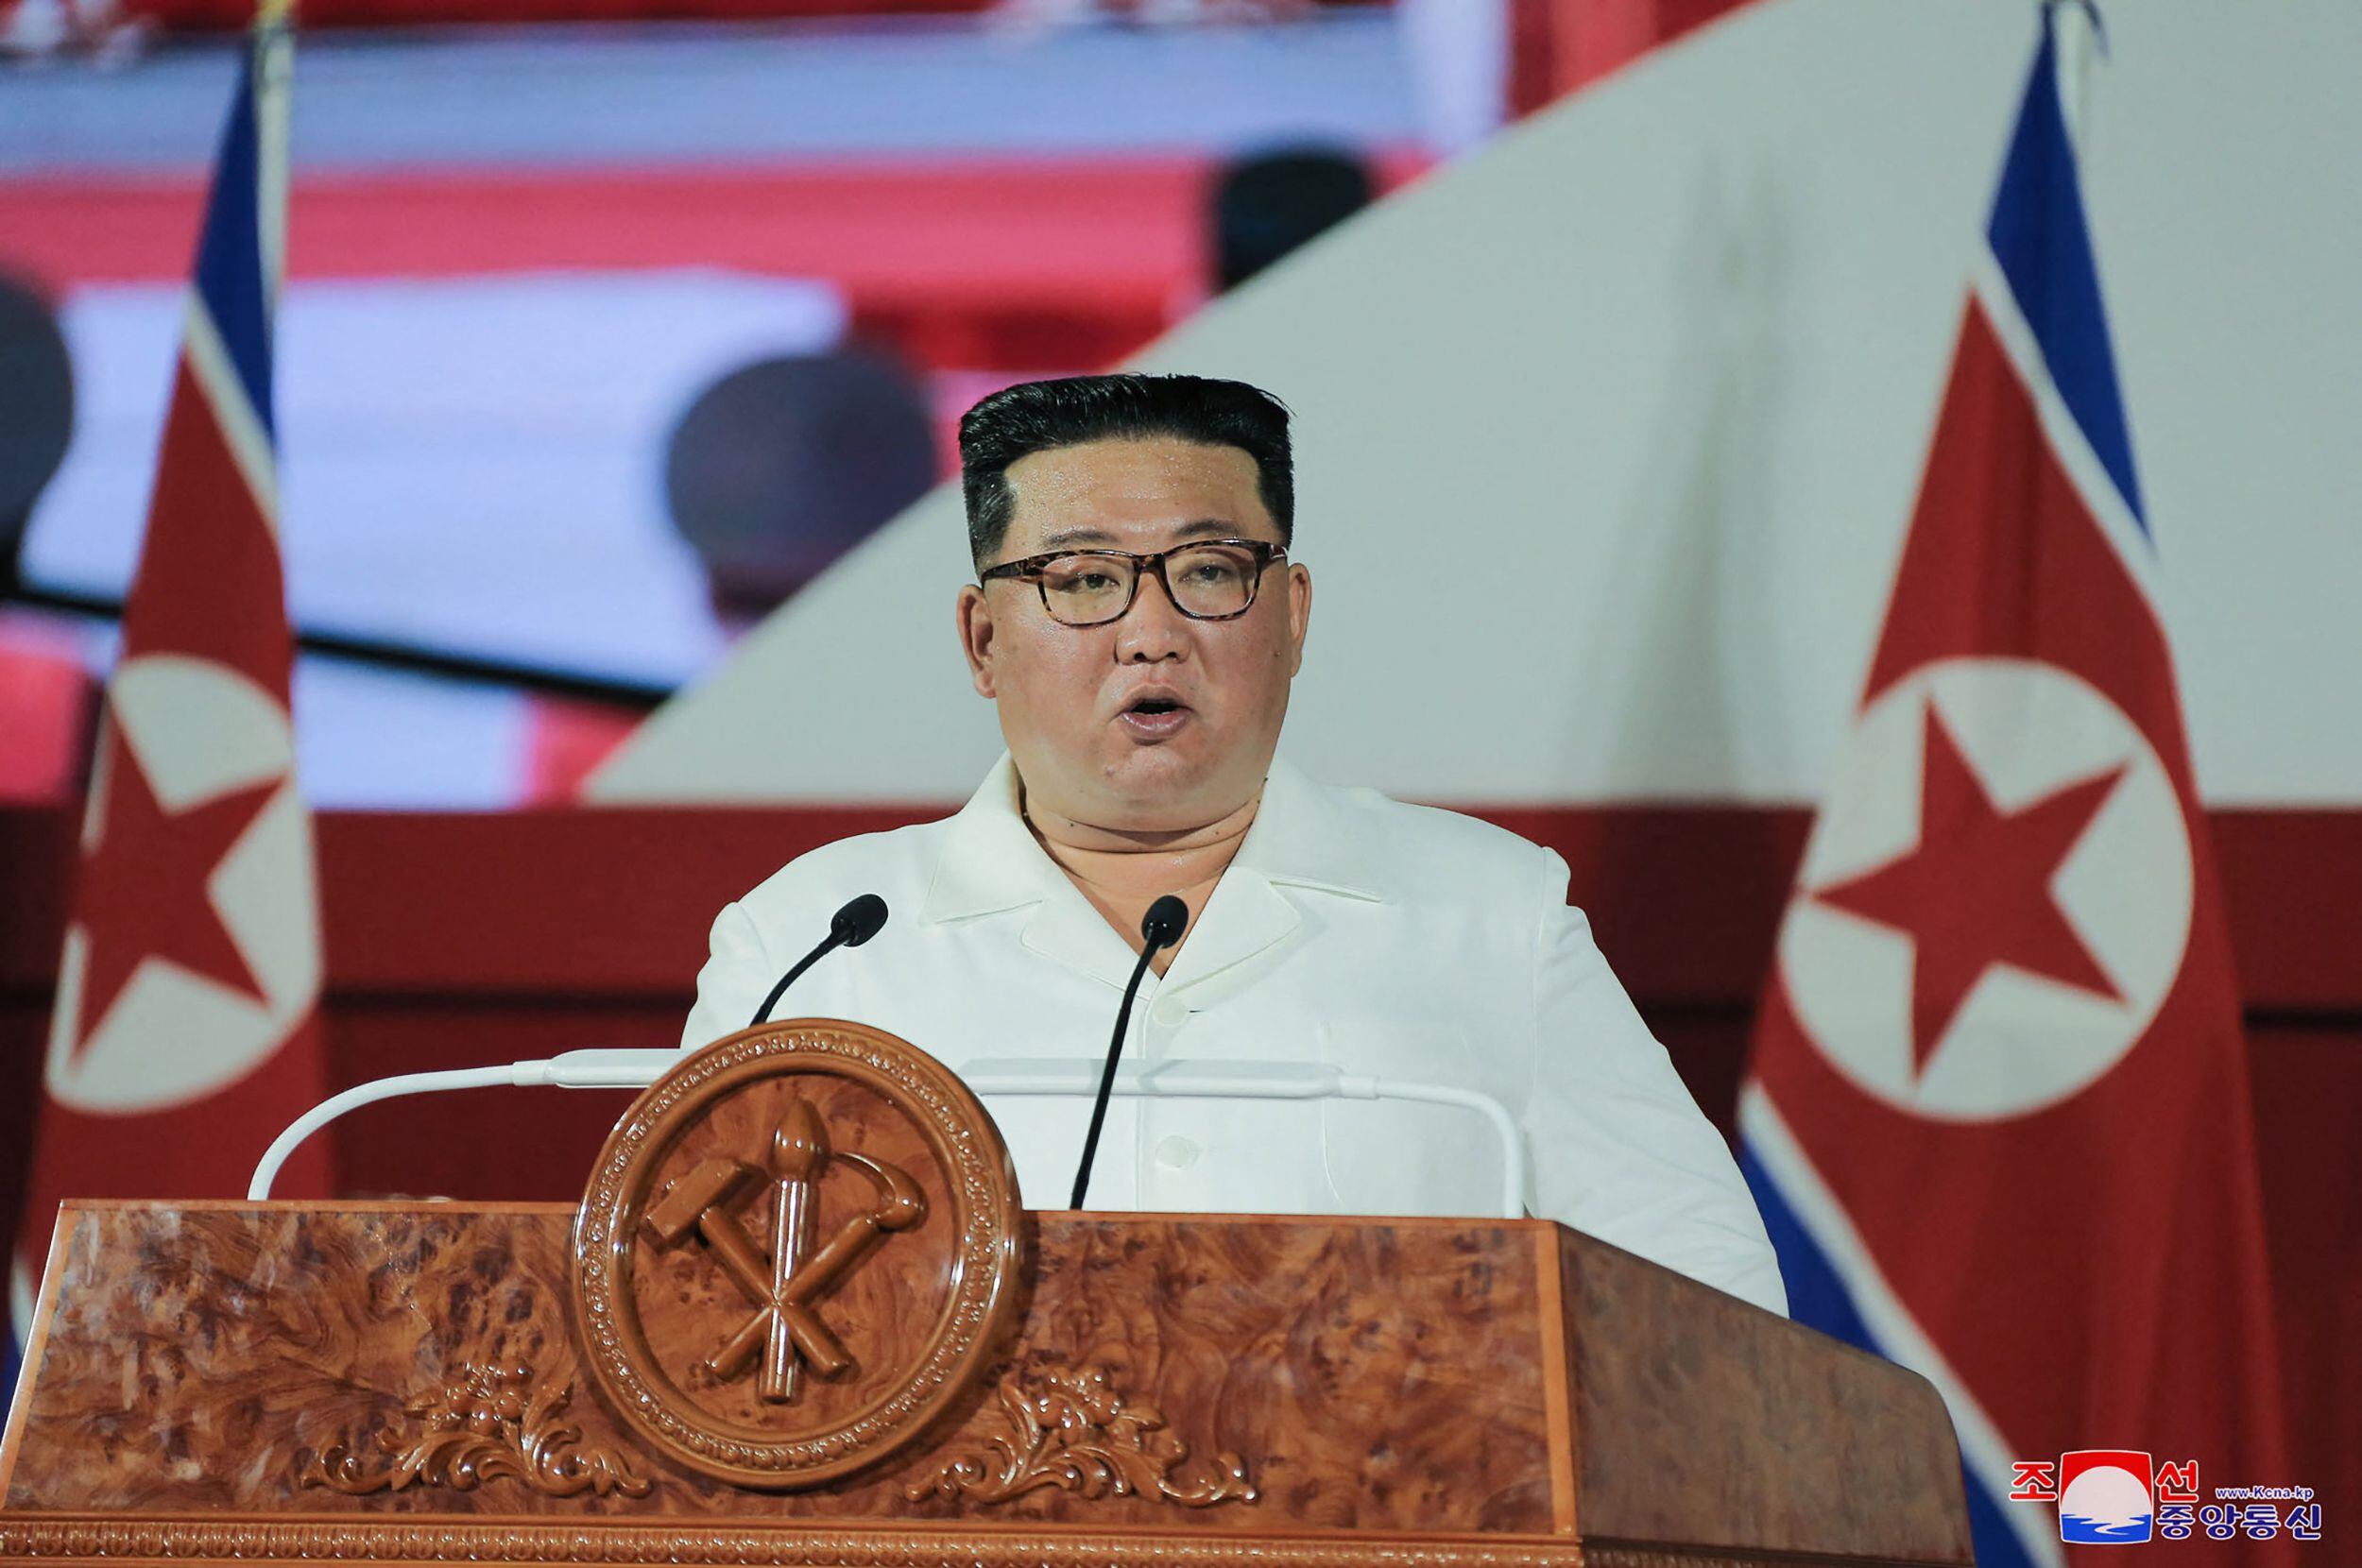 El Pentágono advirtió que un ataque atómico por parte de Corea del Norte significaría 'el fin del régimen' del líder Kim Jong Un.